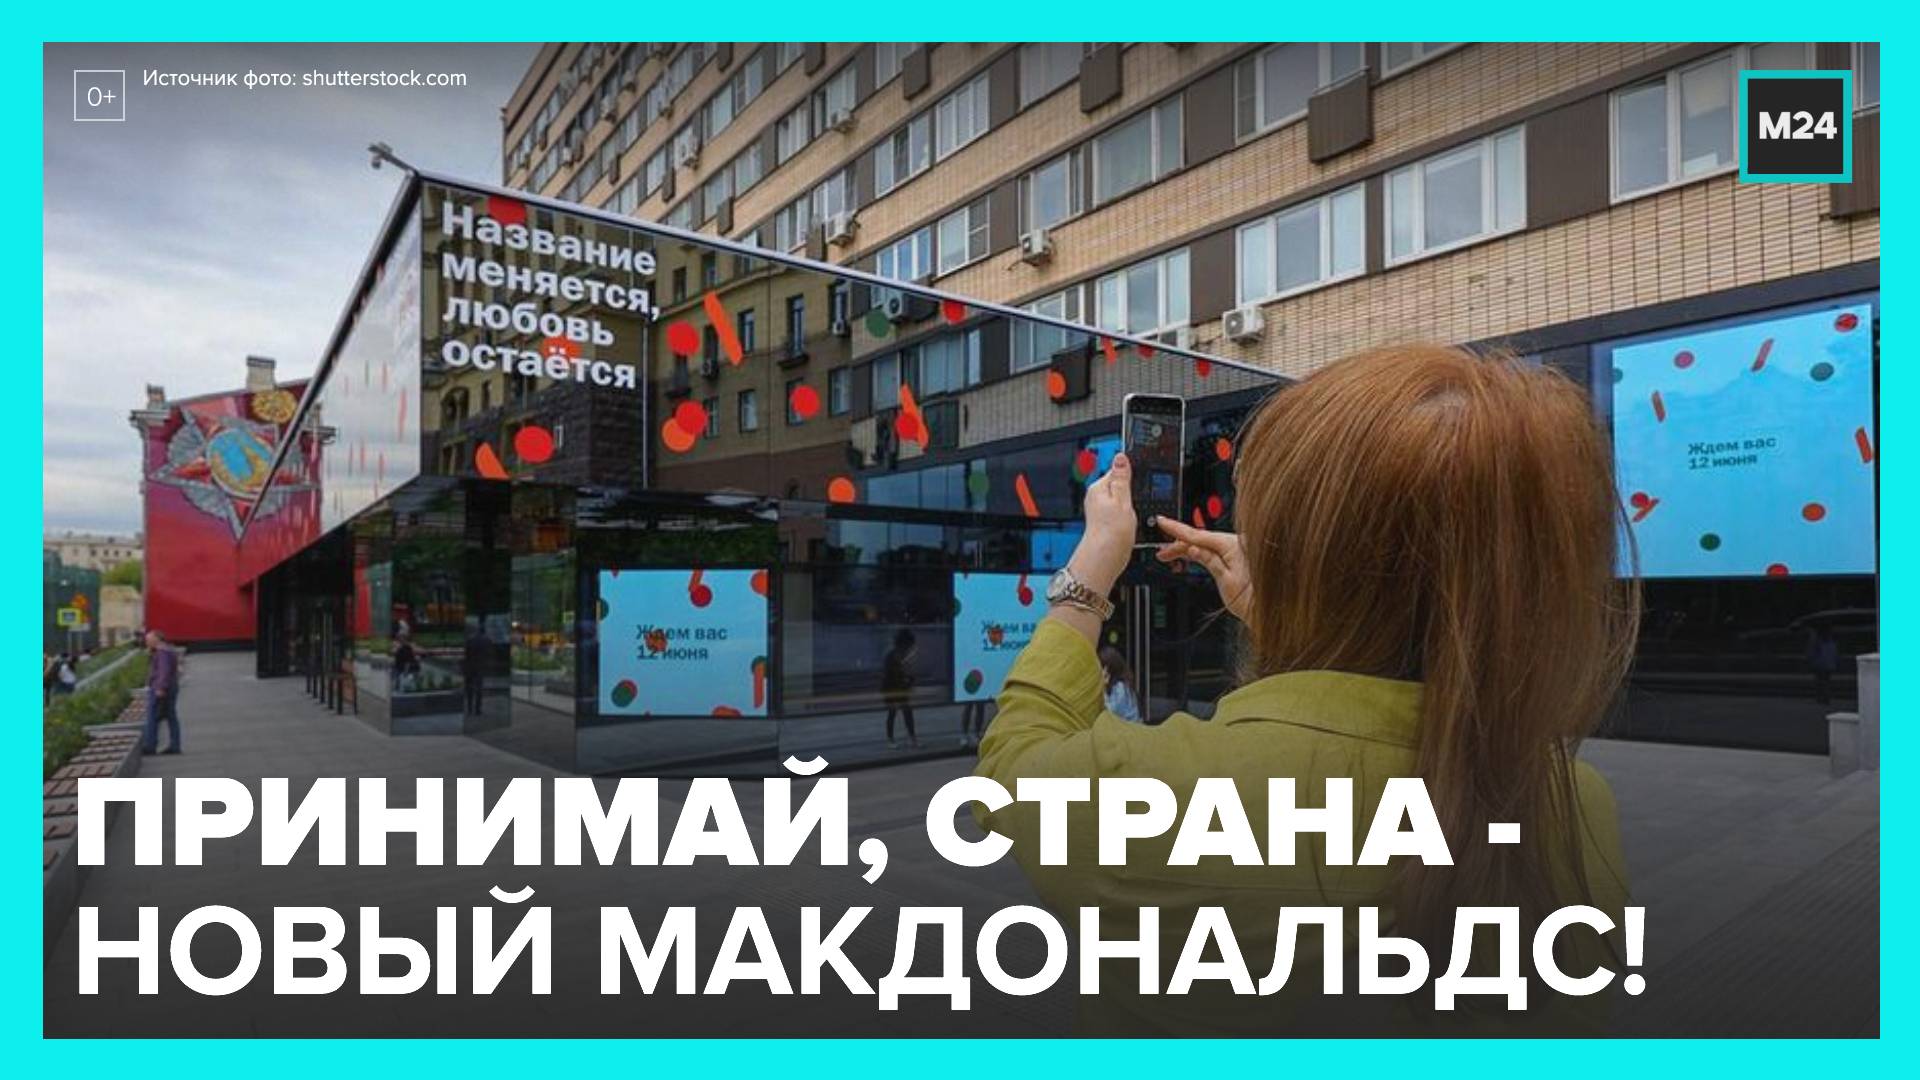 В Москве и области открываются 15 обновленных "Макдональдсов"